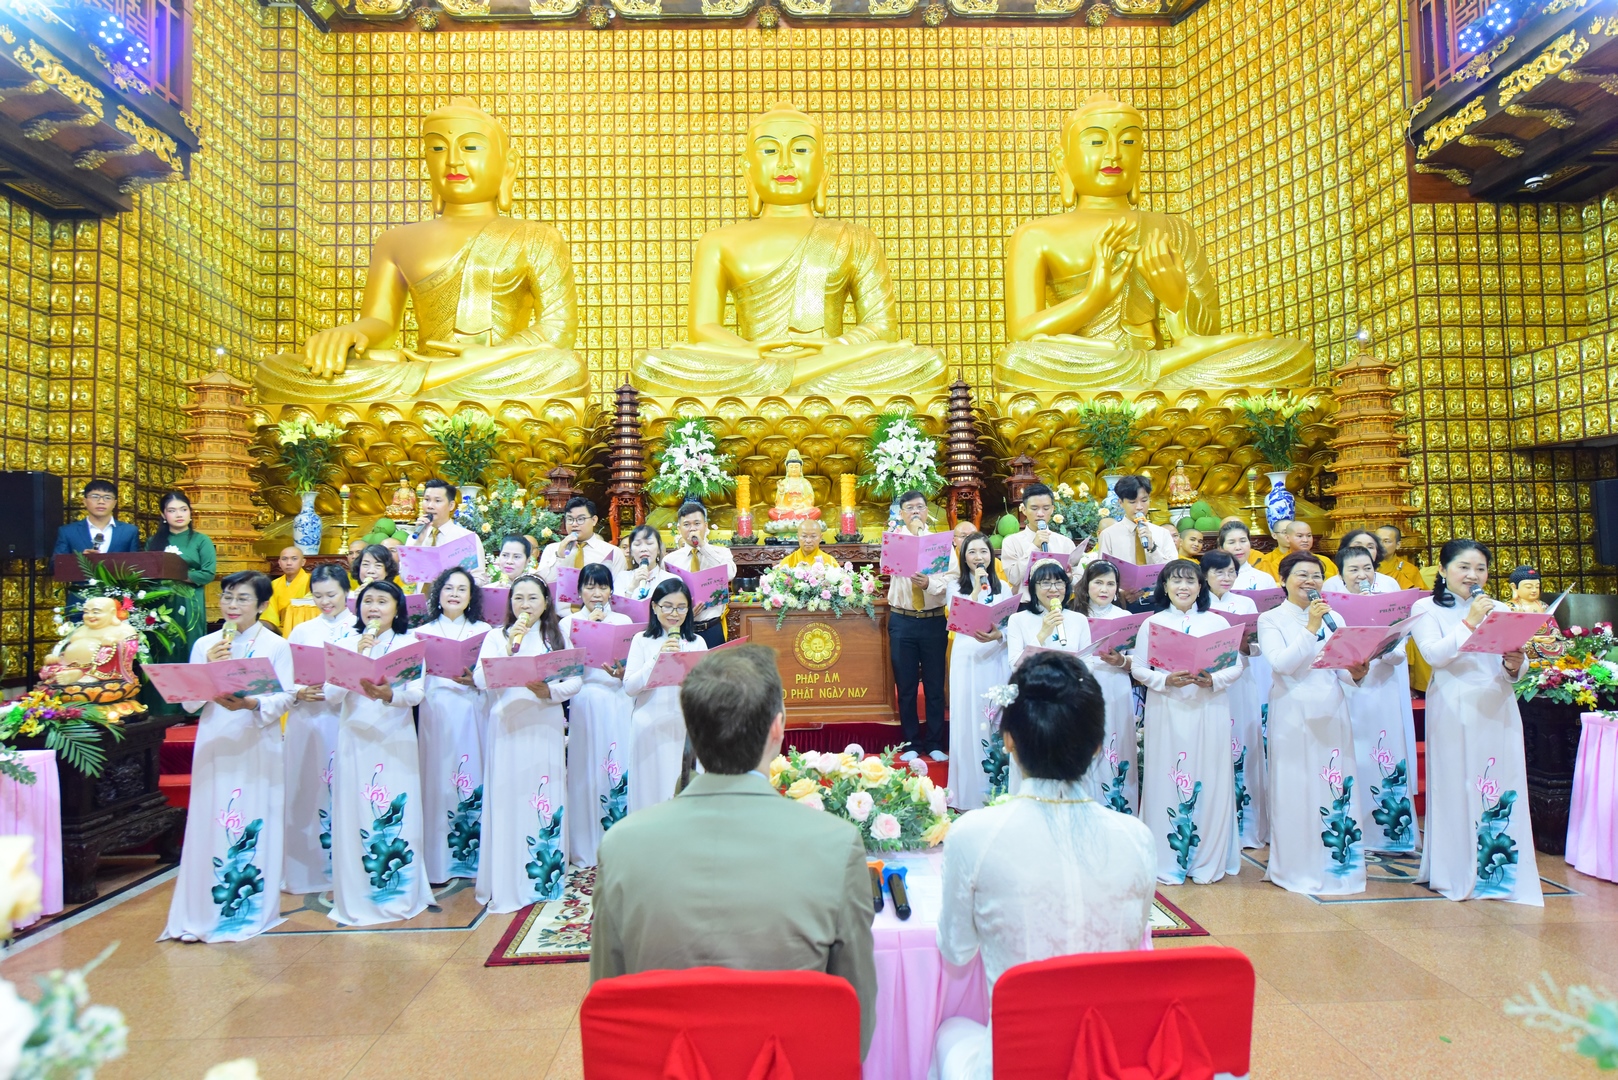 Ban đạo ca chùa Giác Ngộ hát tặng Cô dâu, Chú rể trong ngày hạnh phúc